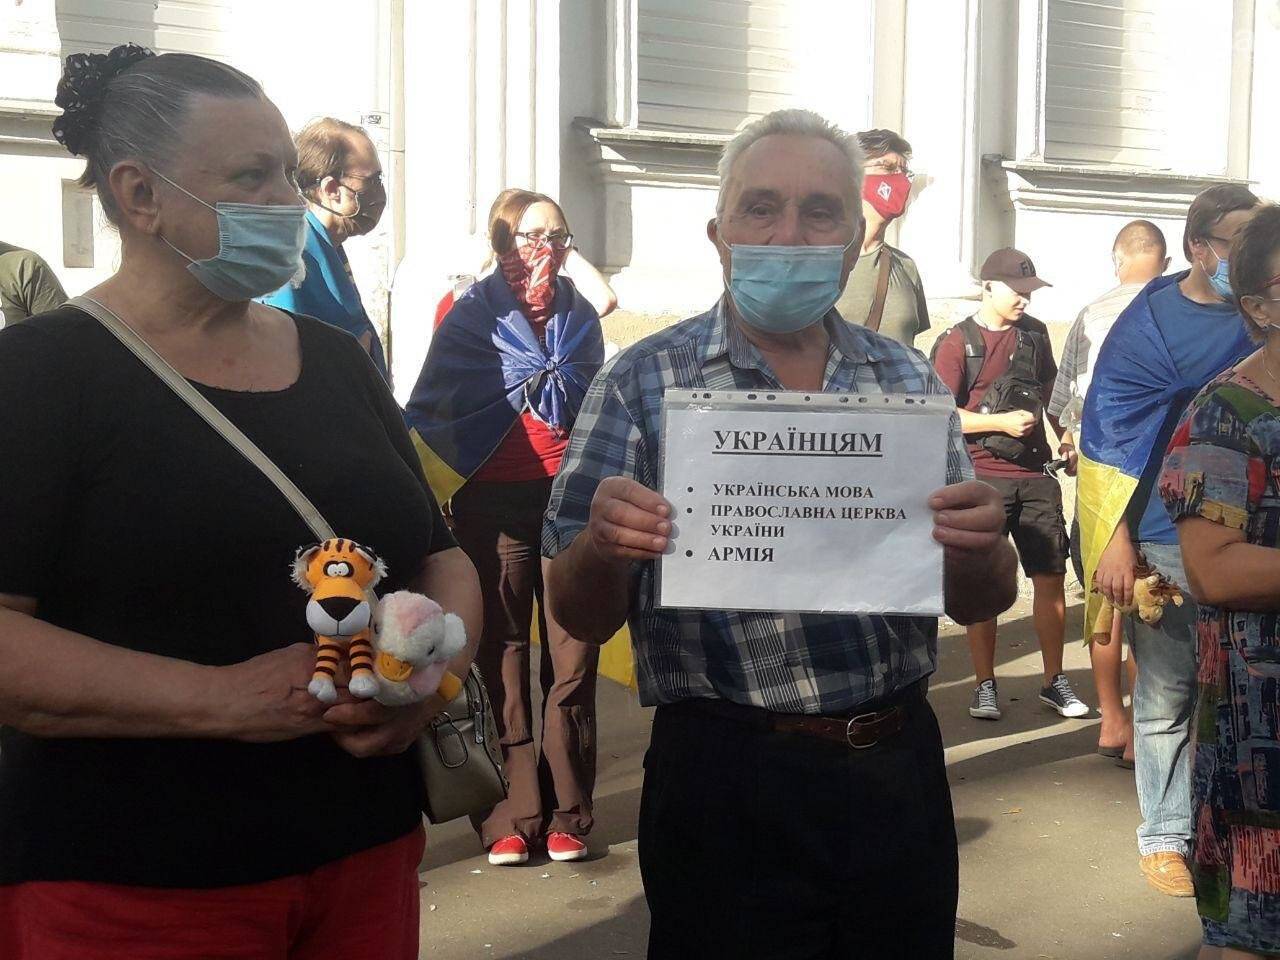 В Харькове под консульством Росси состоялся протест.